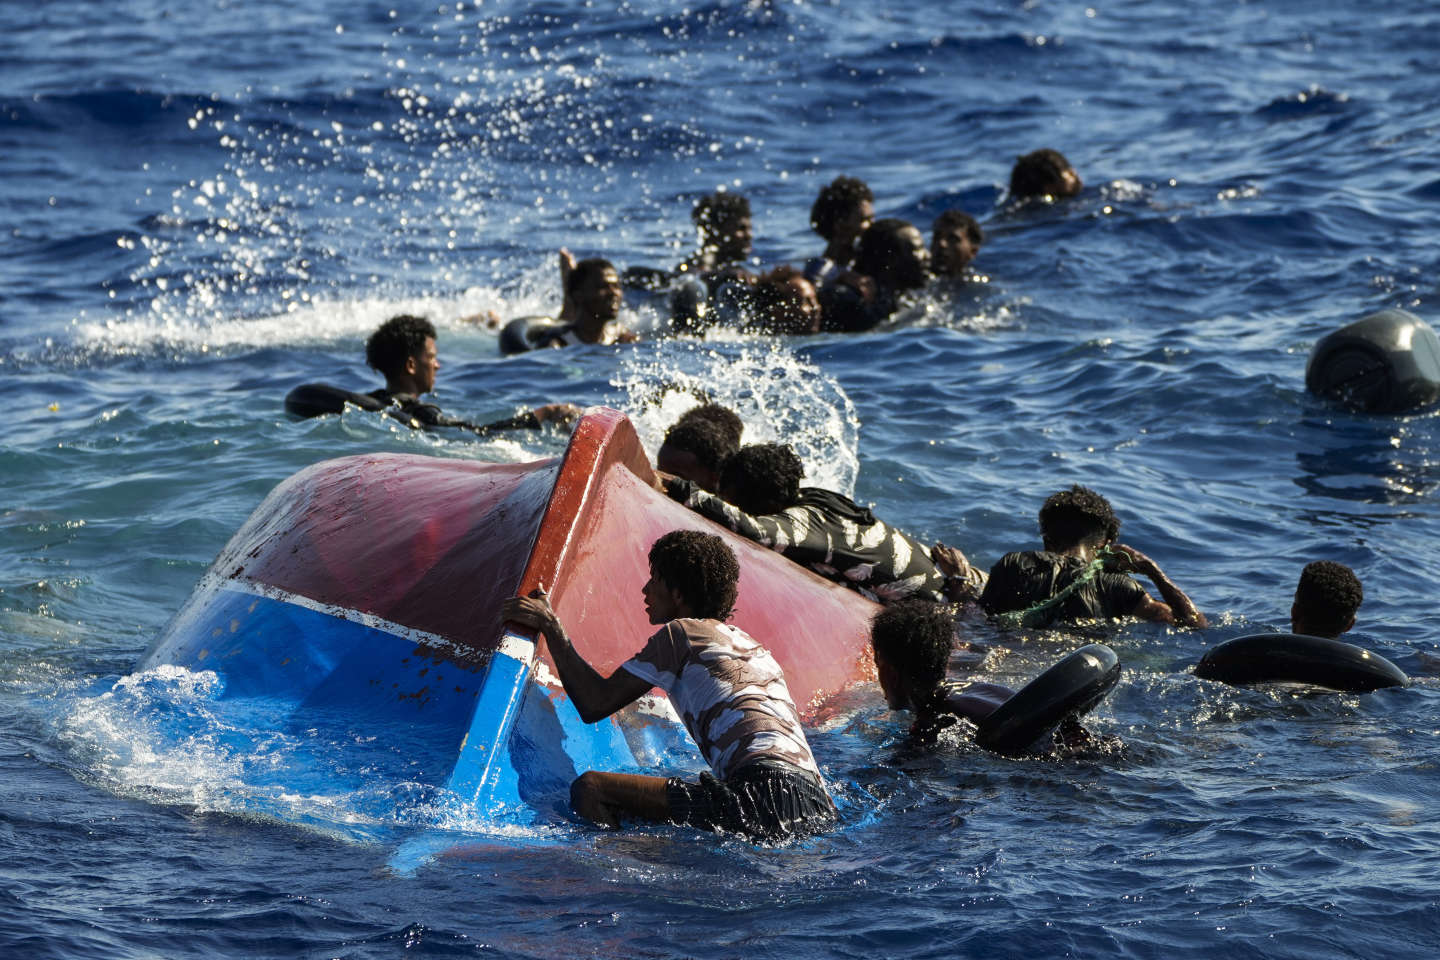 L'Île de Lampedusa Confrontée à une Affluence Sans Précédent de Migrants